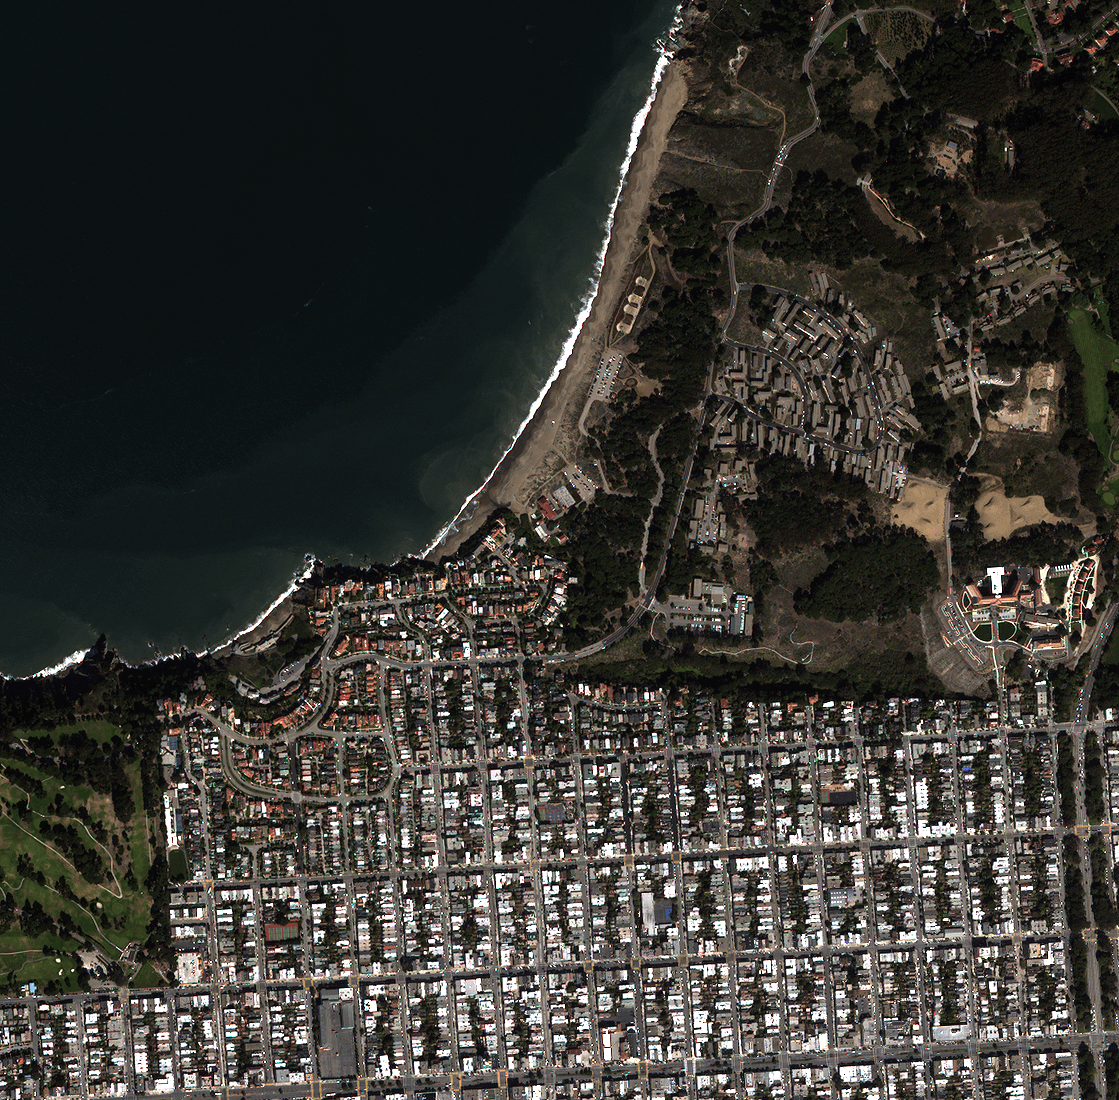 شکل 2. تصویر موزاییک شده چهار تصویر قبلی - کدهای پایتون موزاییک تصاویر ماهواره ای | کدهای پایتون برای موزاییک کردن تصاویر ماهواره ای